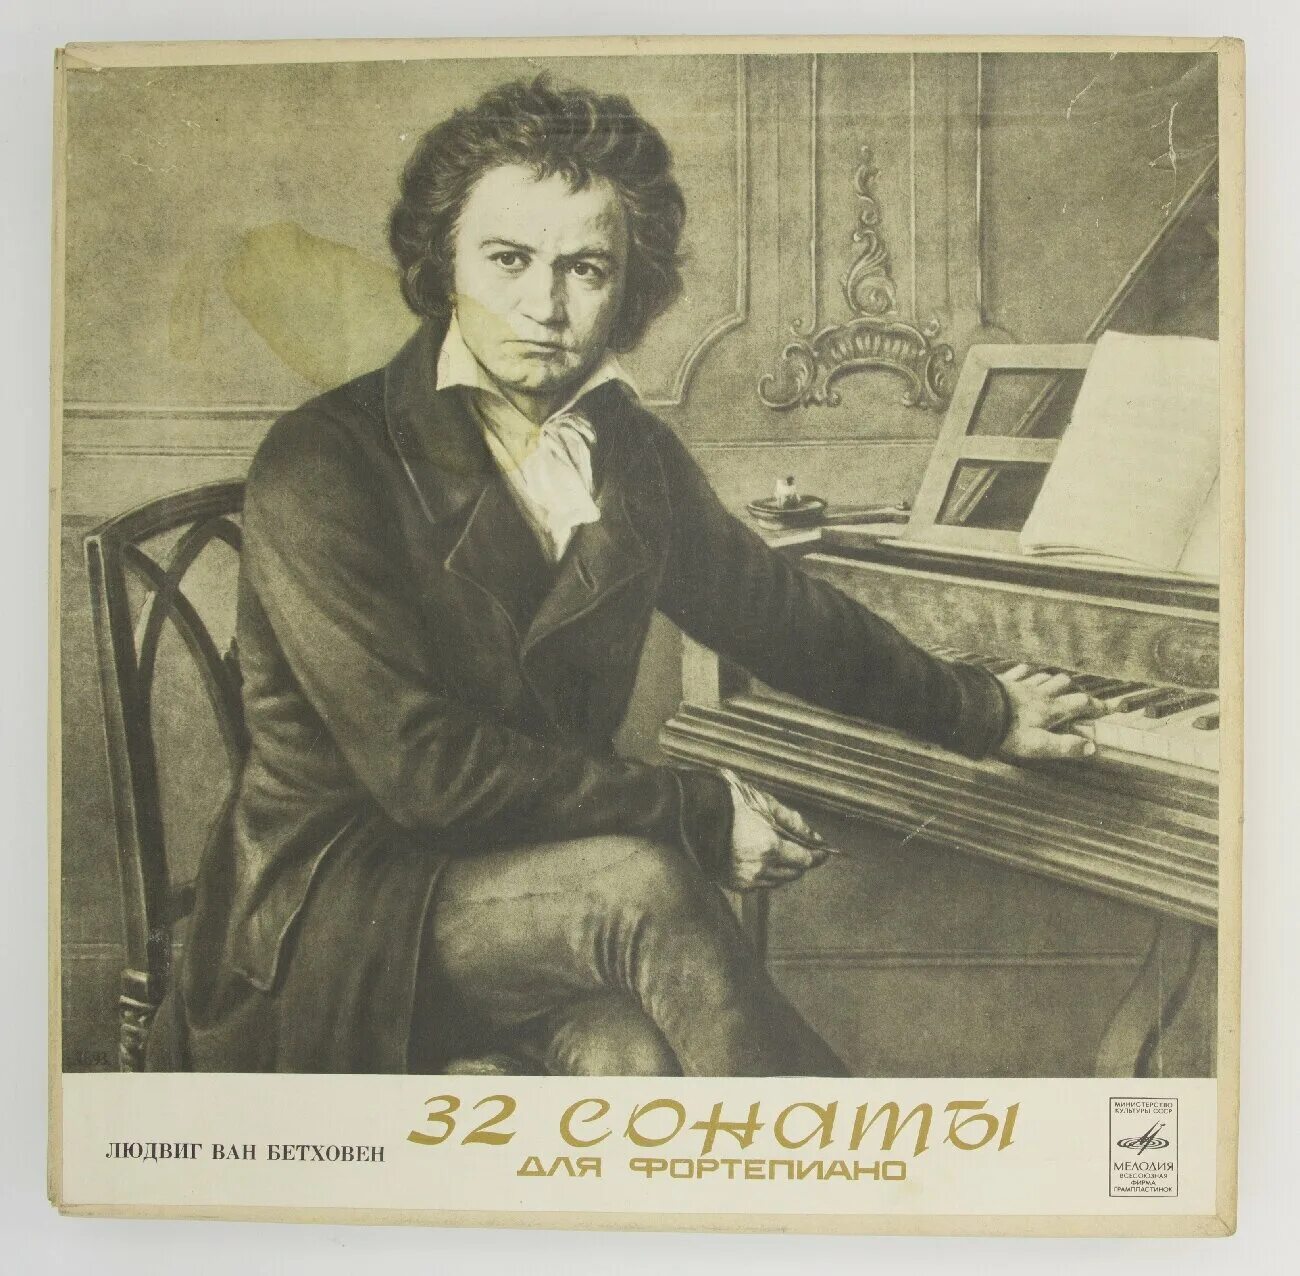 На чем играл бетховен. Бетховен портрет композитора. Бетховен в детстве.